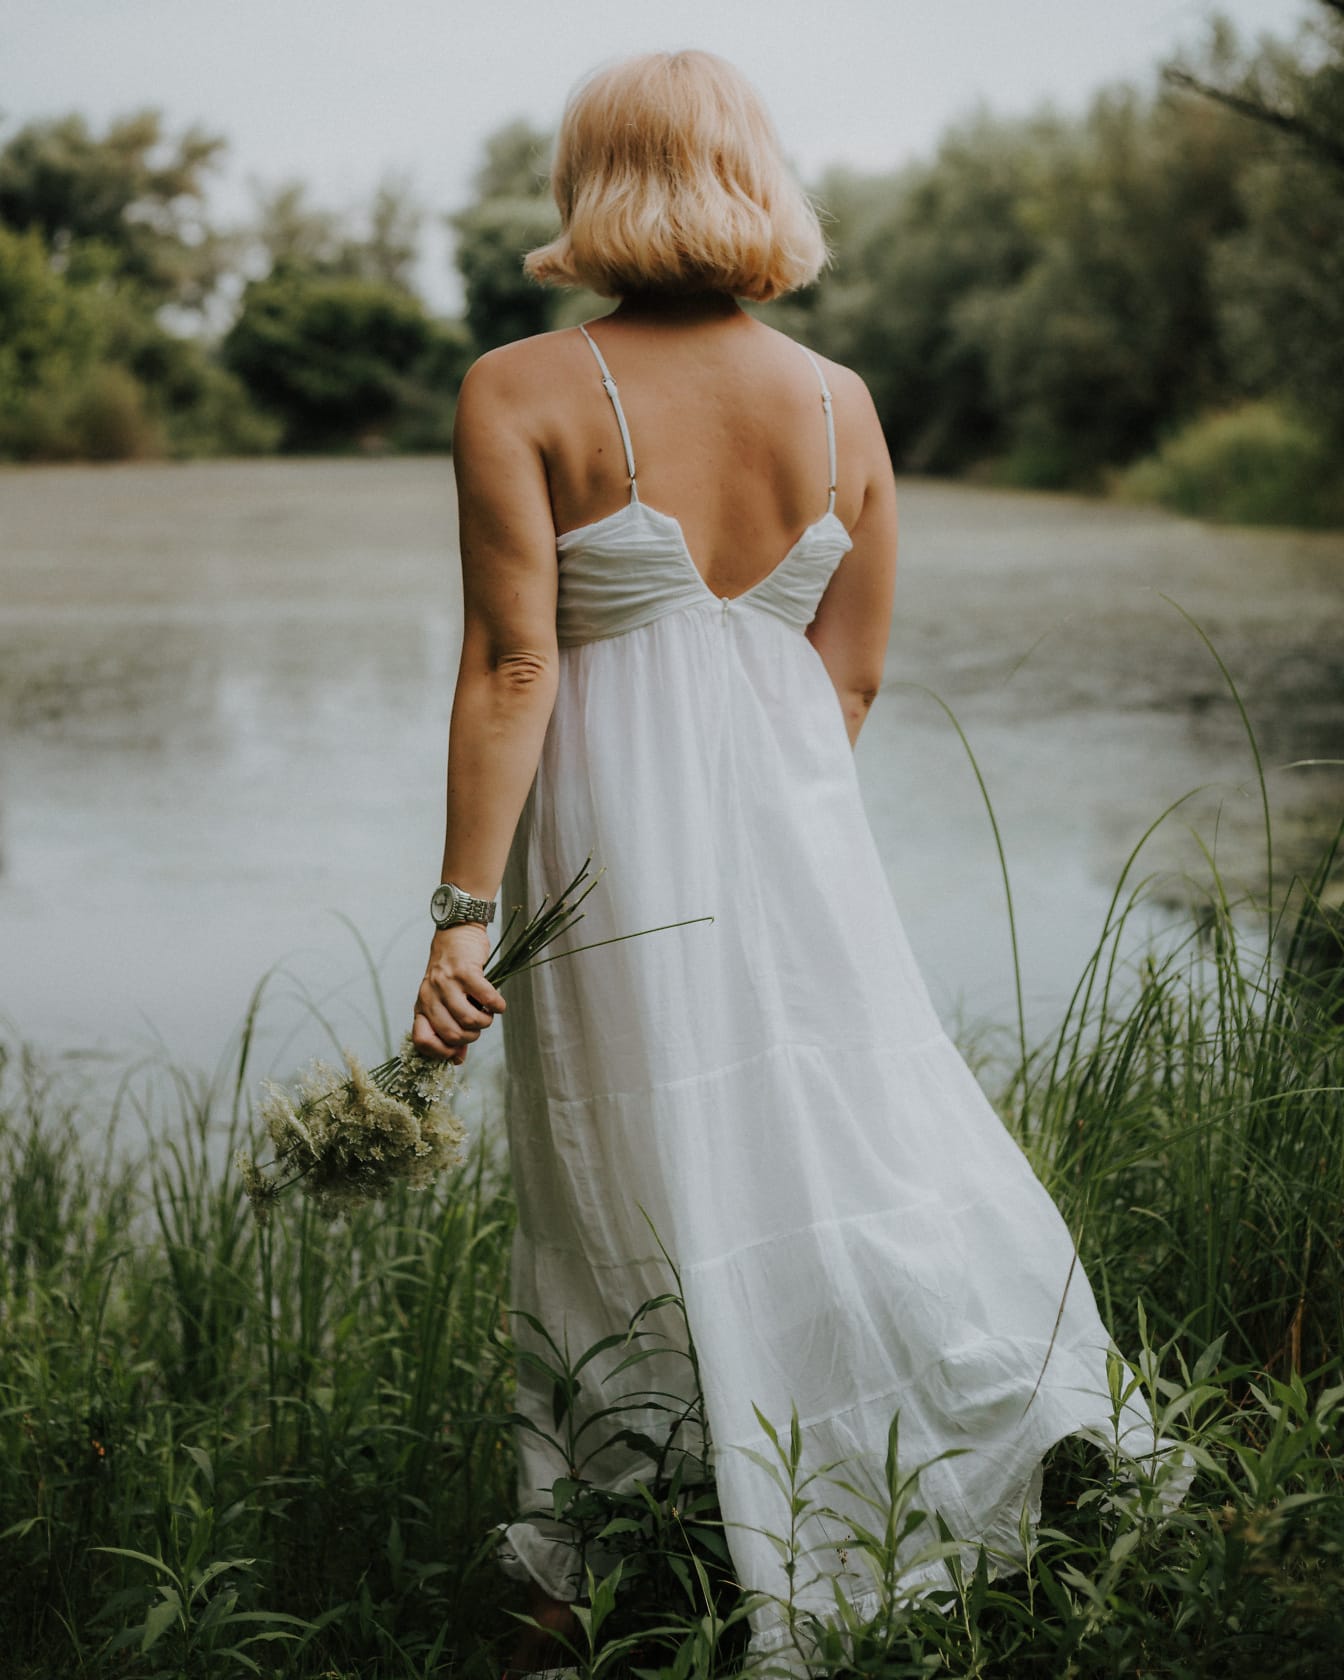 Классическое старомодное белое платье с открытой спиной на фотомодели блондинки